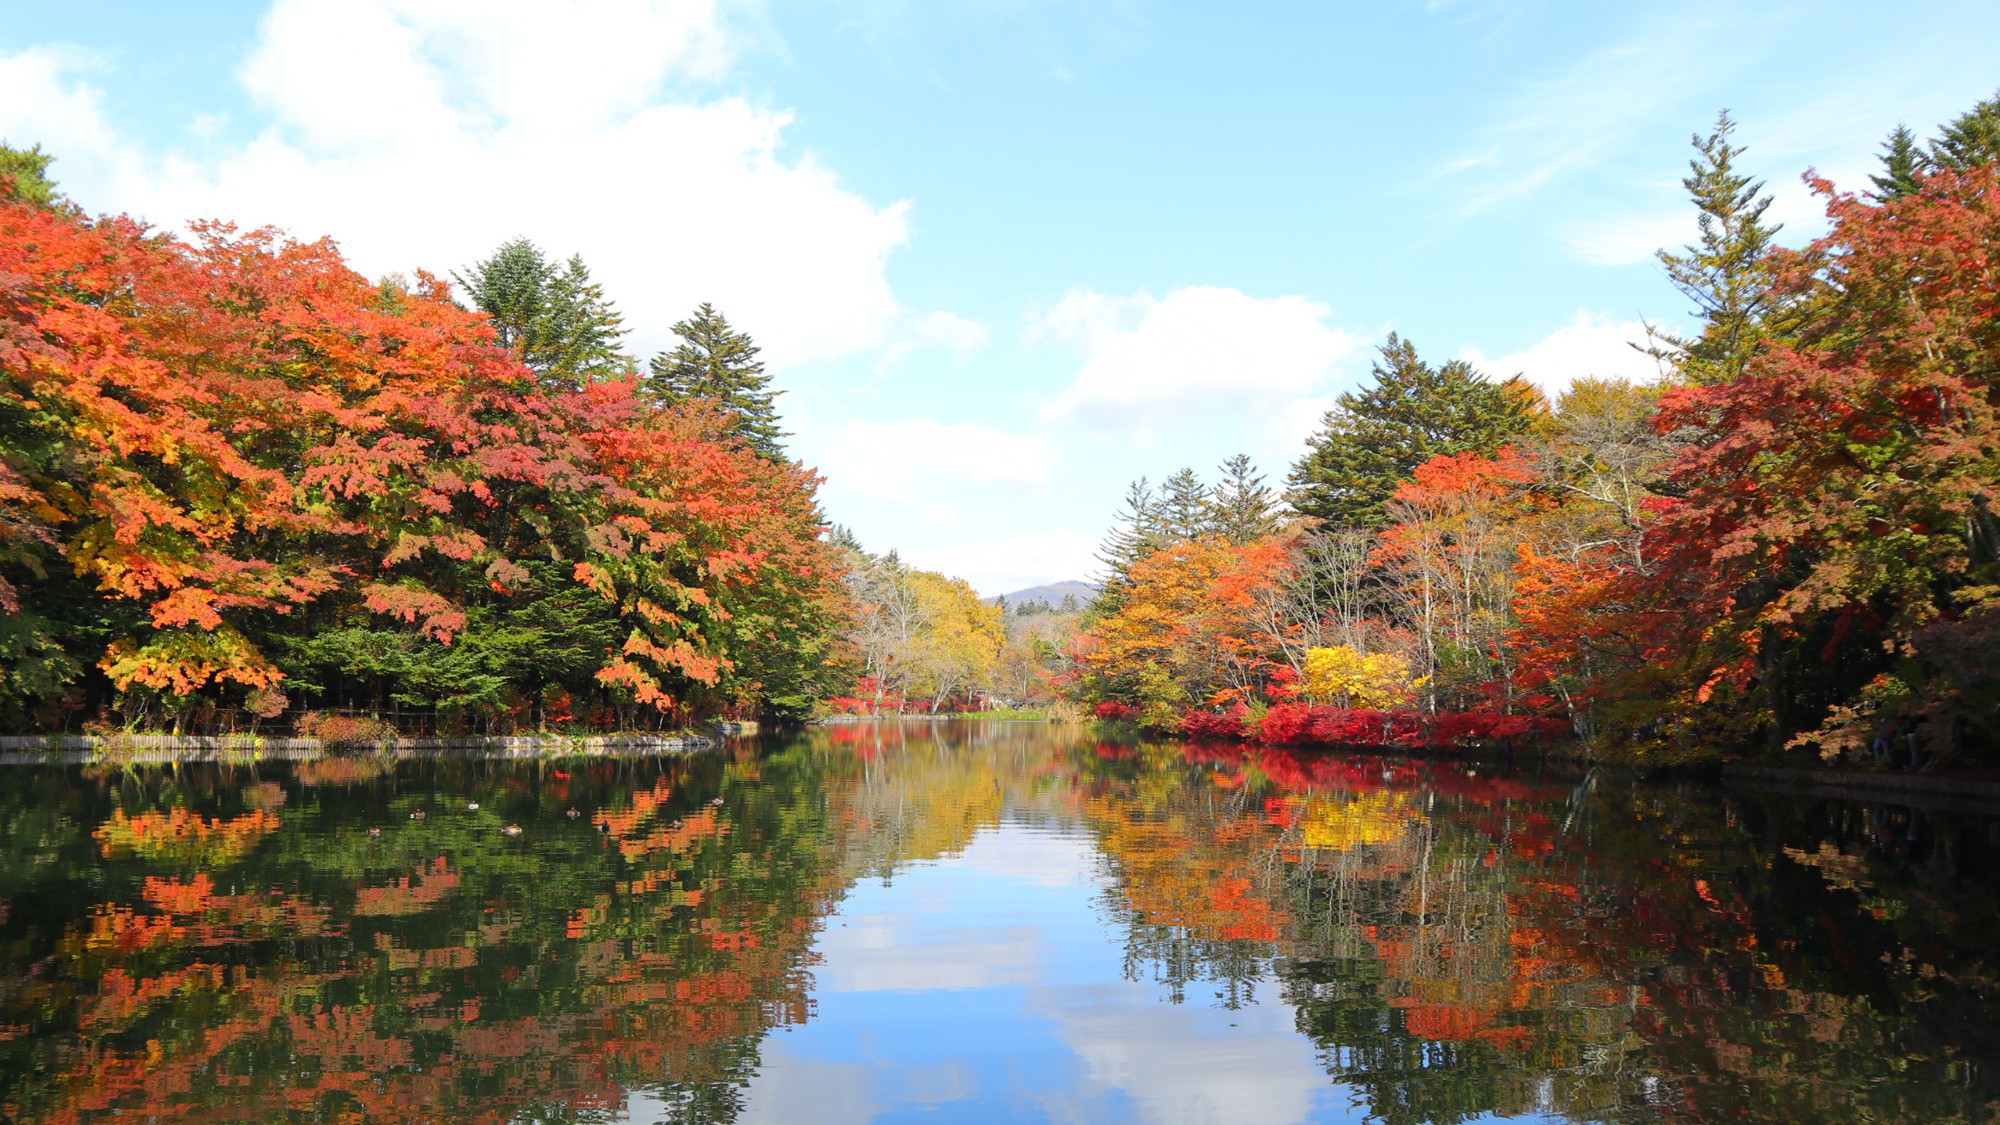 雲場池／湖面に映る四季折々の自然が美しい軽井沢の必見の名所。秋の紅葉は特におすすめ。